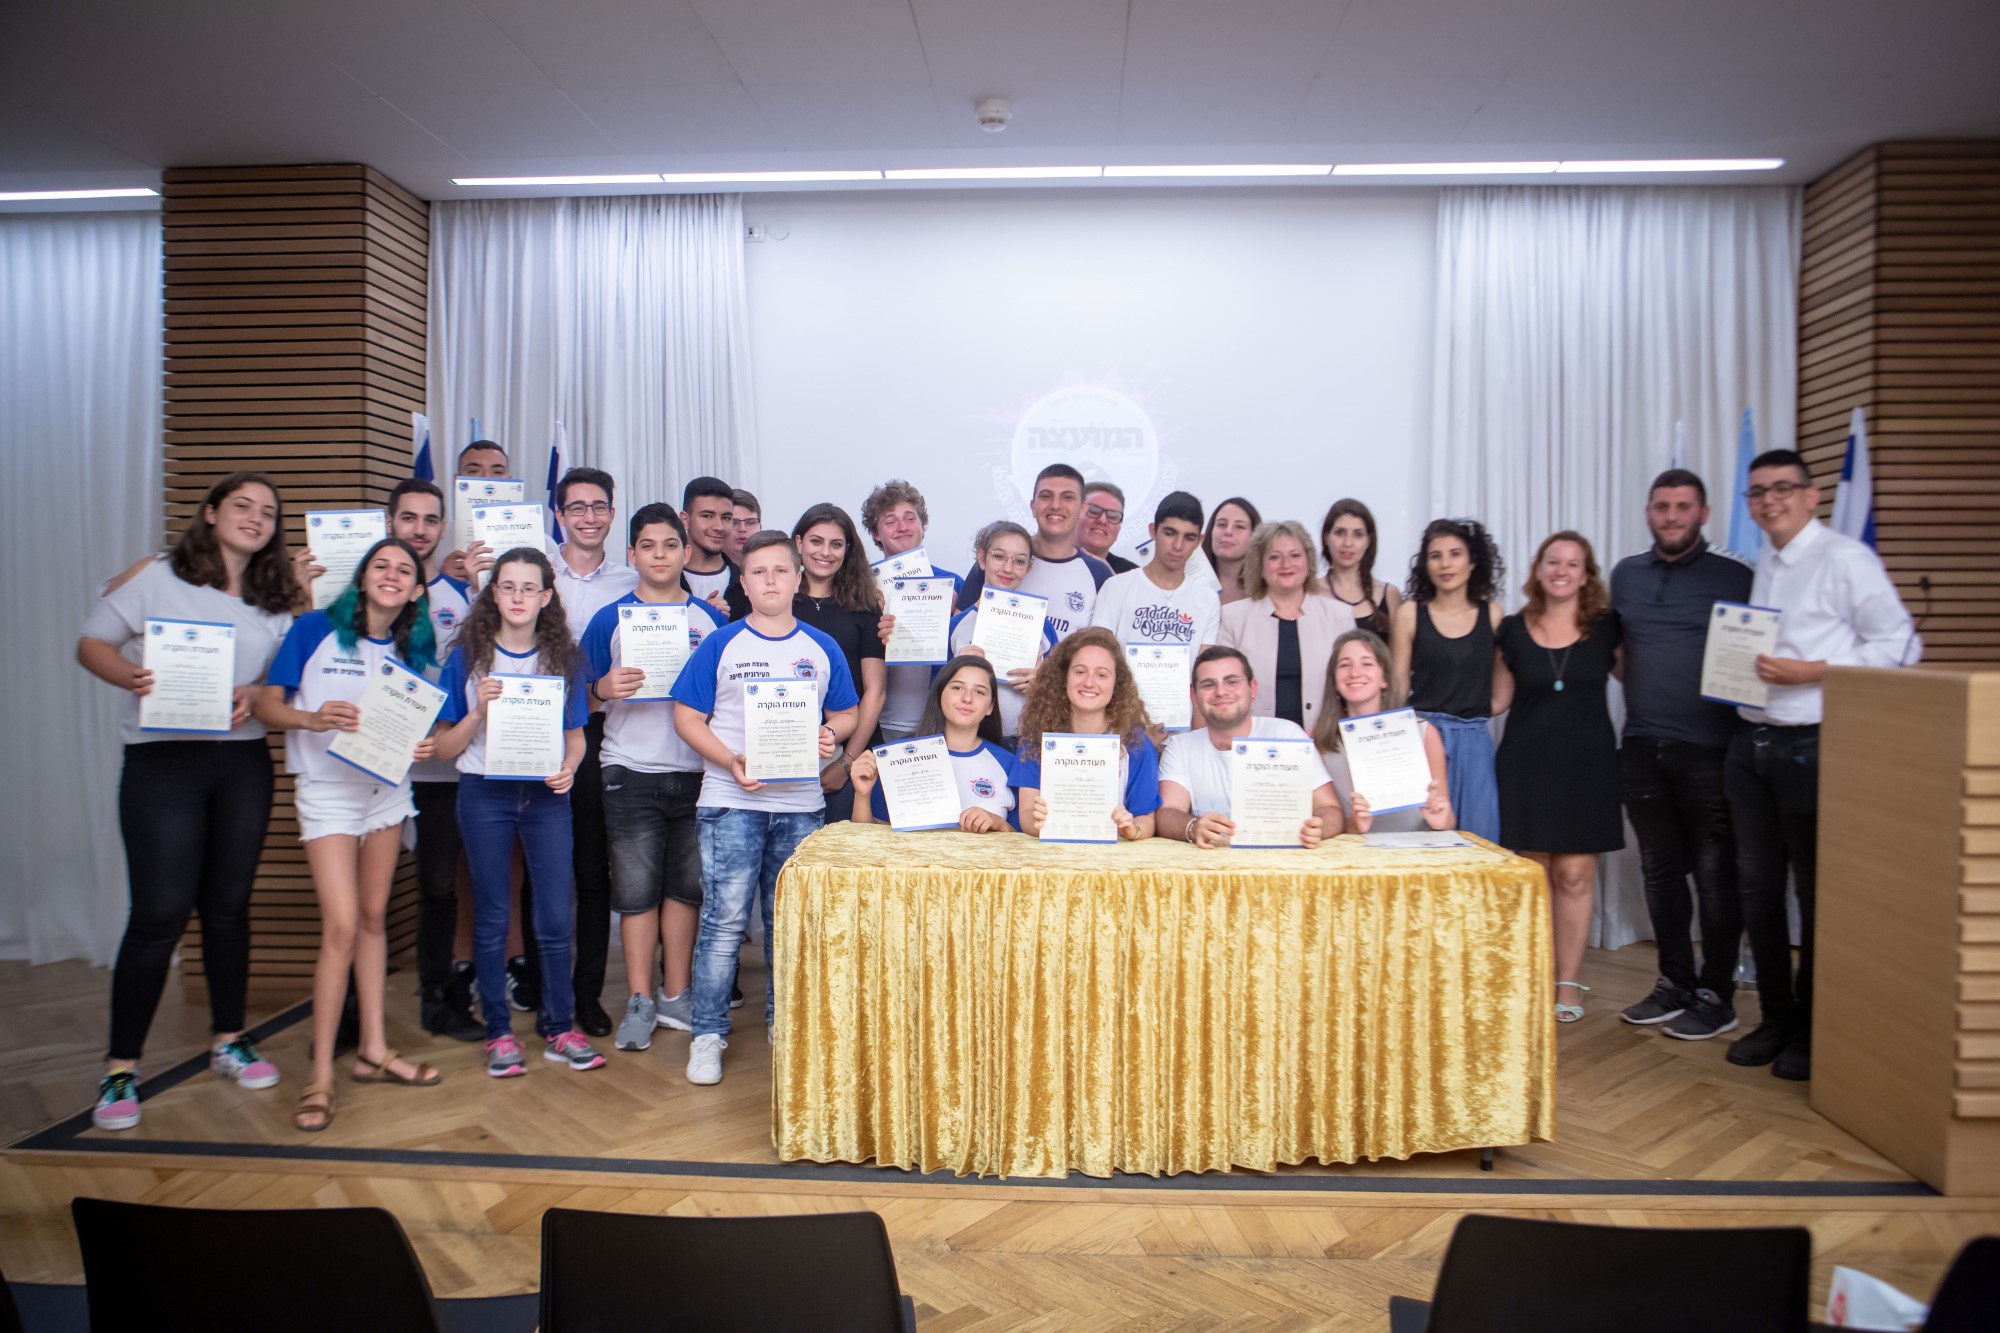 מספר שיא של 23 מועצות בתי-ספר בחיפה זכו ב"אות התקינות" של משרד החינוך